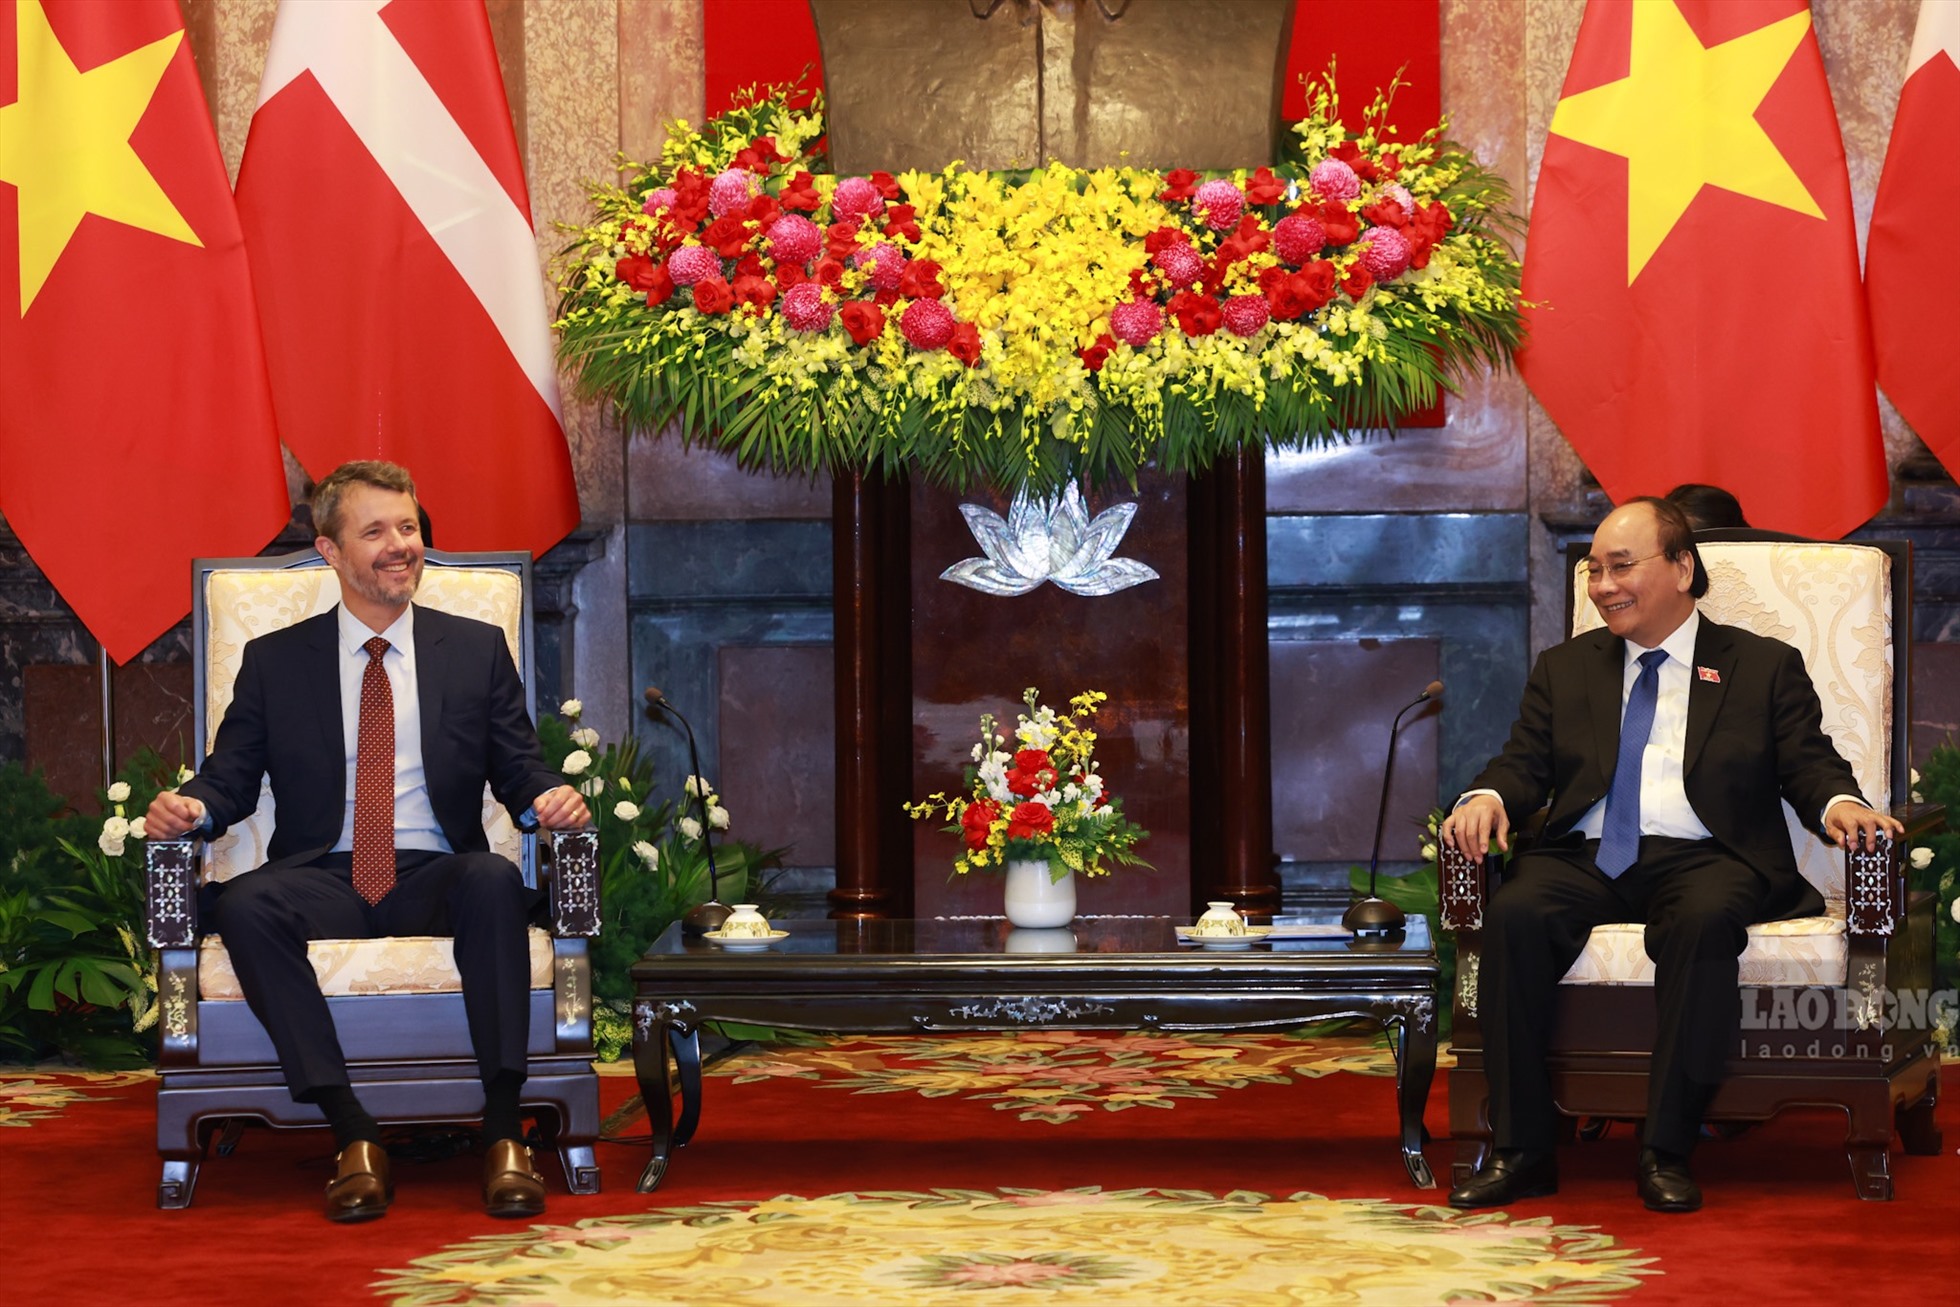 Ông duy trì các hoạt động ngoại giao sau đó như tới thăm Việt Nam vào dịp 40 năm kỷ niệm quan hệ hai nước, chúc mừng các dịp Quốc khánh 2.9 của Việt Nam. Ảnh: Hải Nguyễn